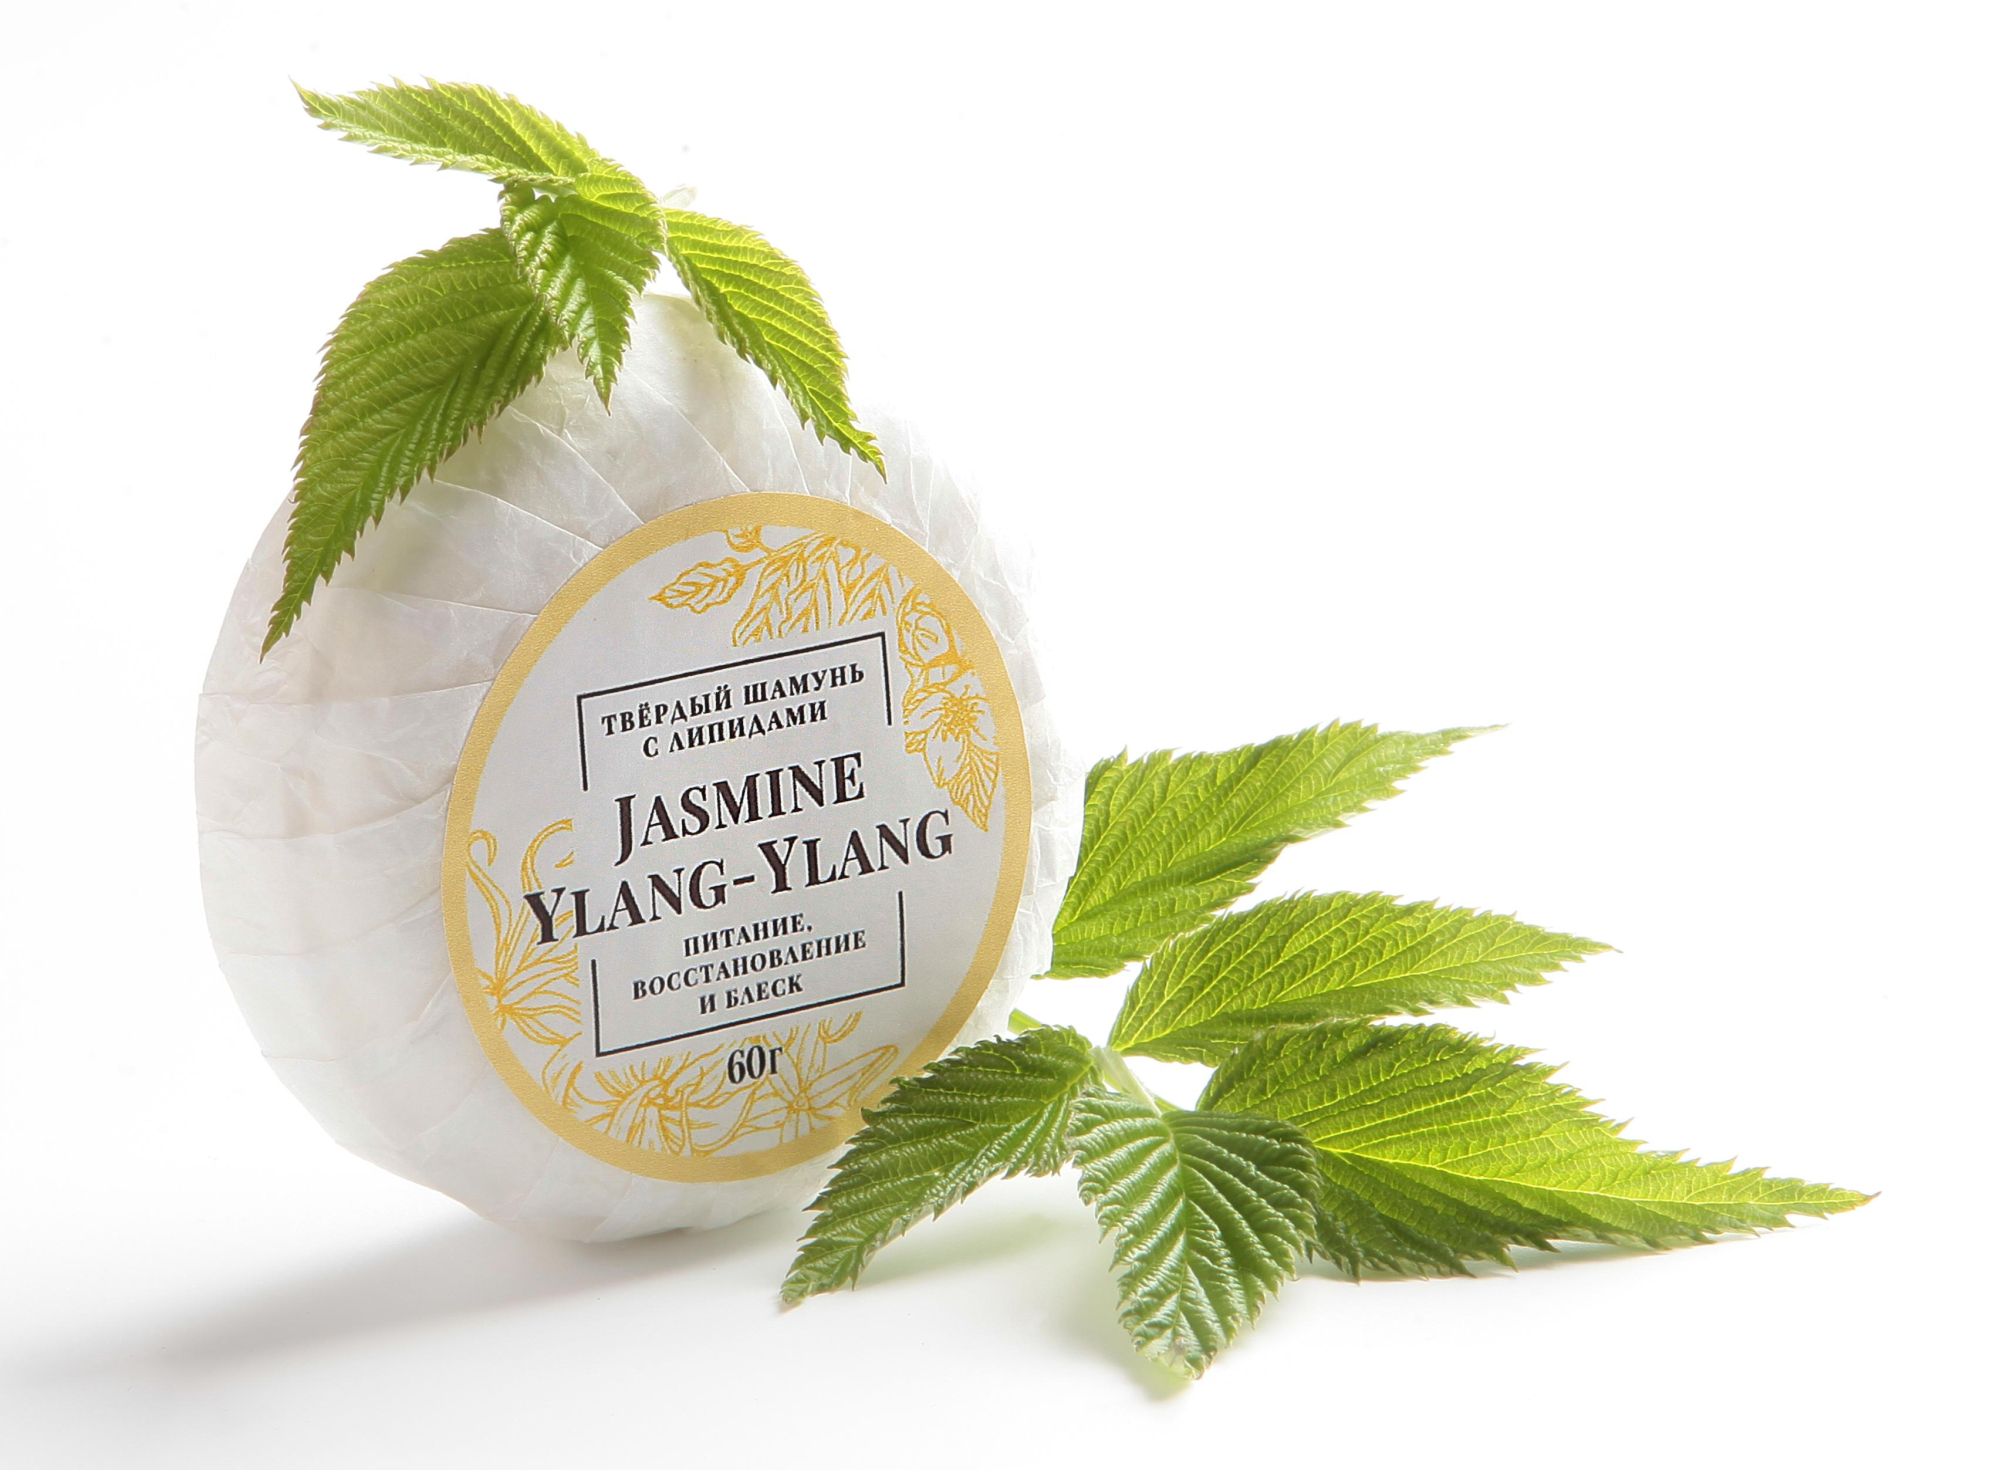 Твердый Шампунь с липидами Jasmine & Ylang-Ylang купить в онлайн экомаркете